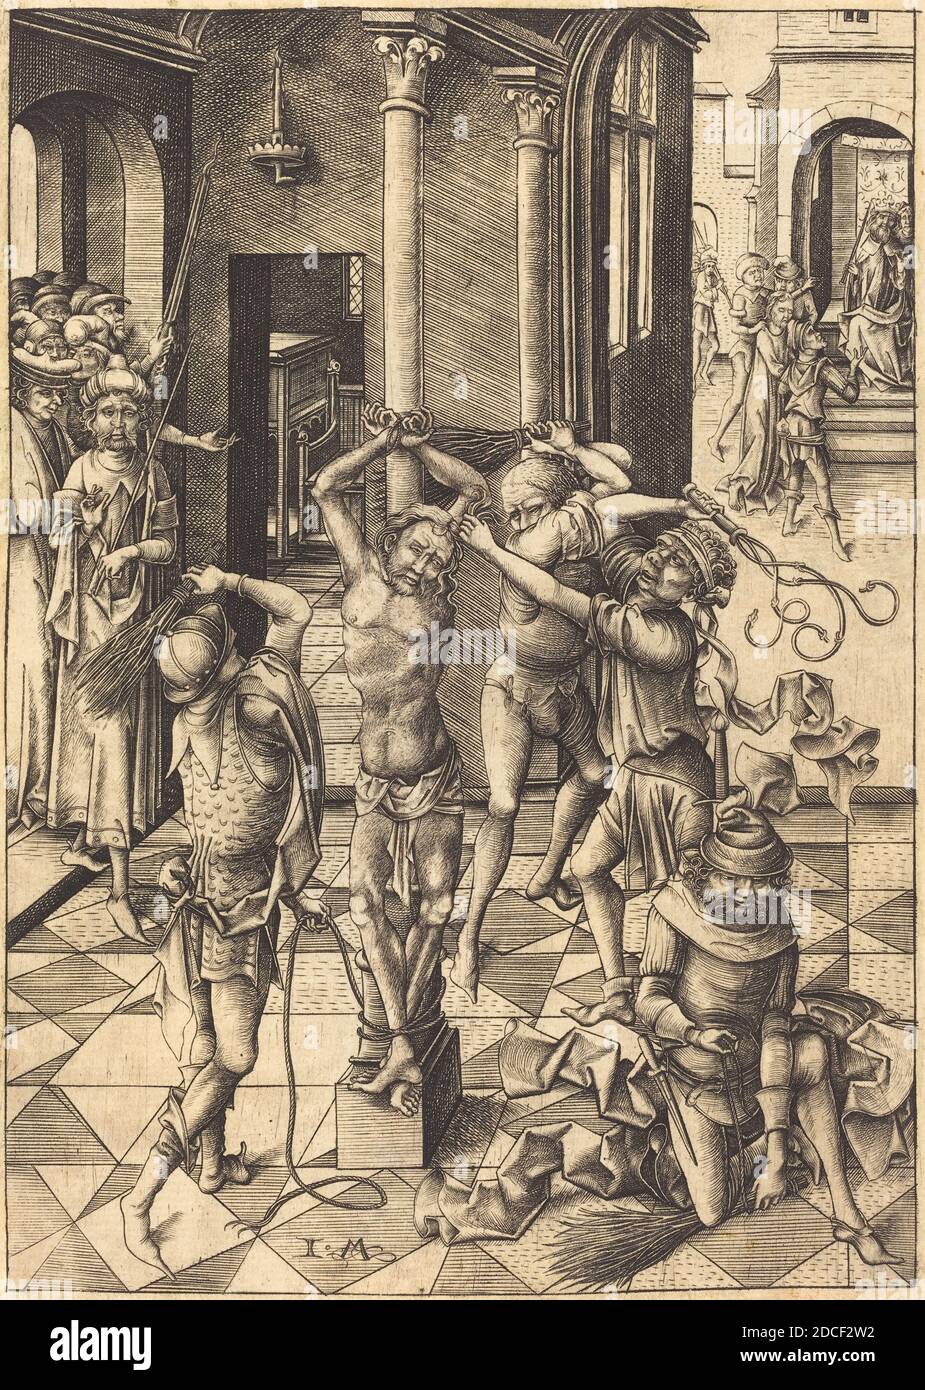 Israhel van Meckenem, (artist), German, c. 1445 - 1503, The Flagellation, Twelve Scenes of the Pasion, (series), c. 1480, engraving Stock Photo